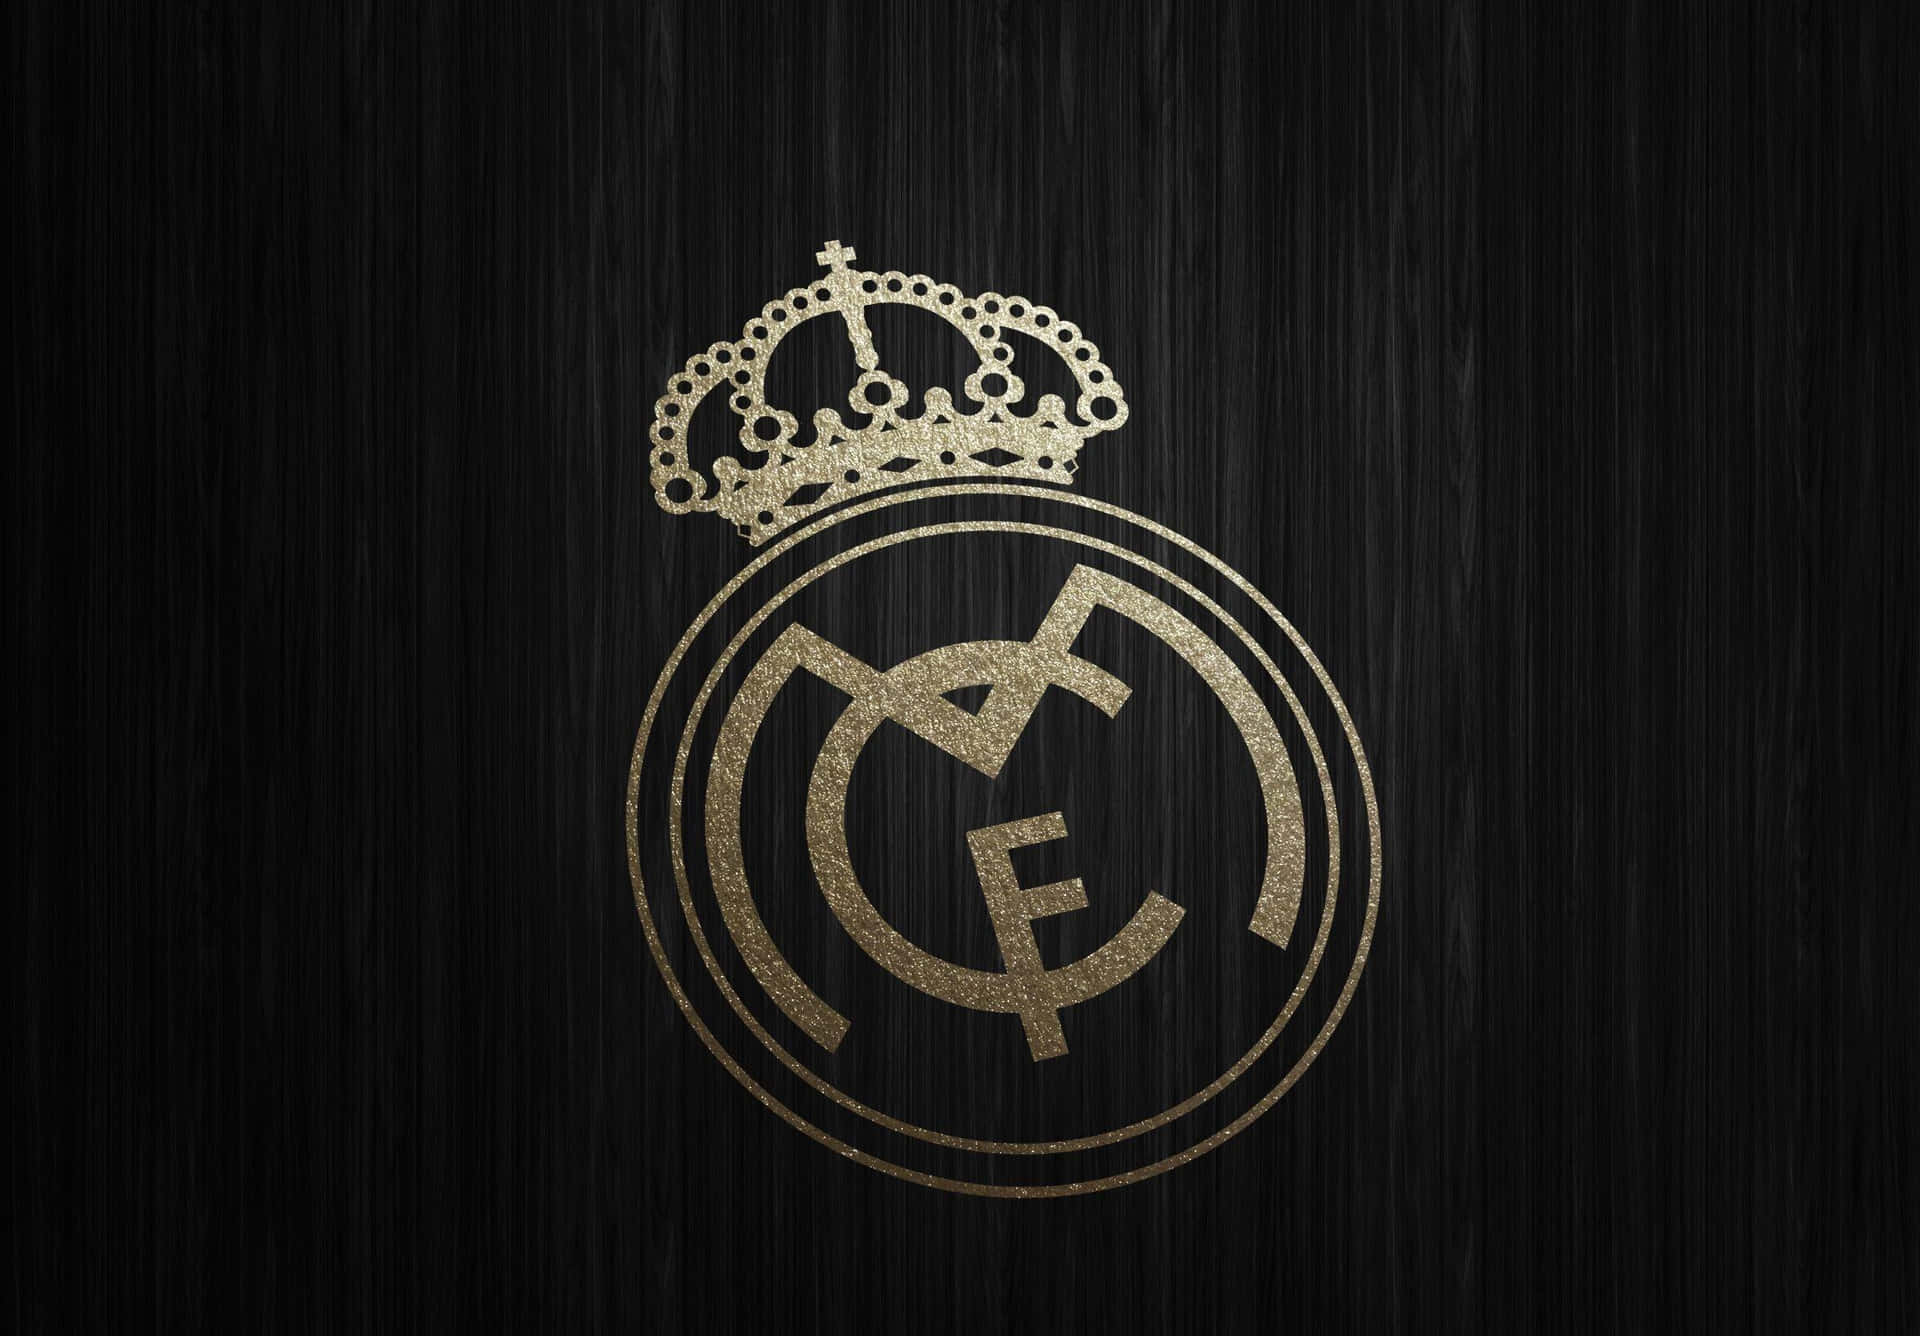 "The pride of Madrid: Real Madrid Football Club"